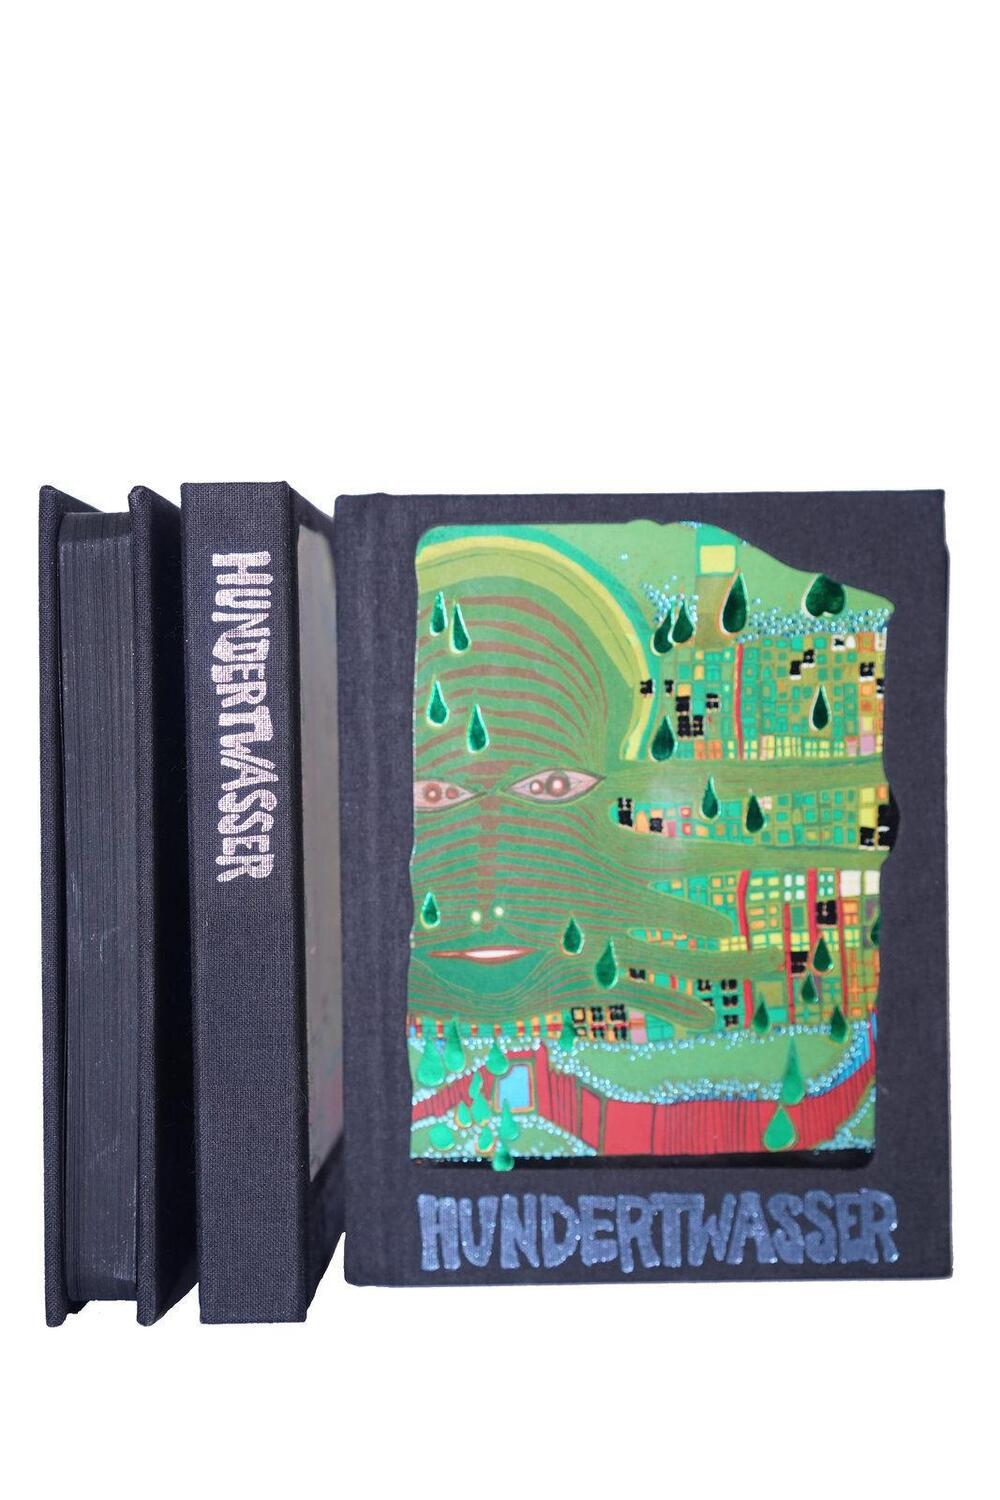 Bild: 9783791387055 | Hundertwasser (aktualisierte Ausgabe, dt./engl.) | Wieland Schmied